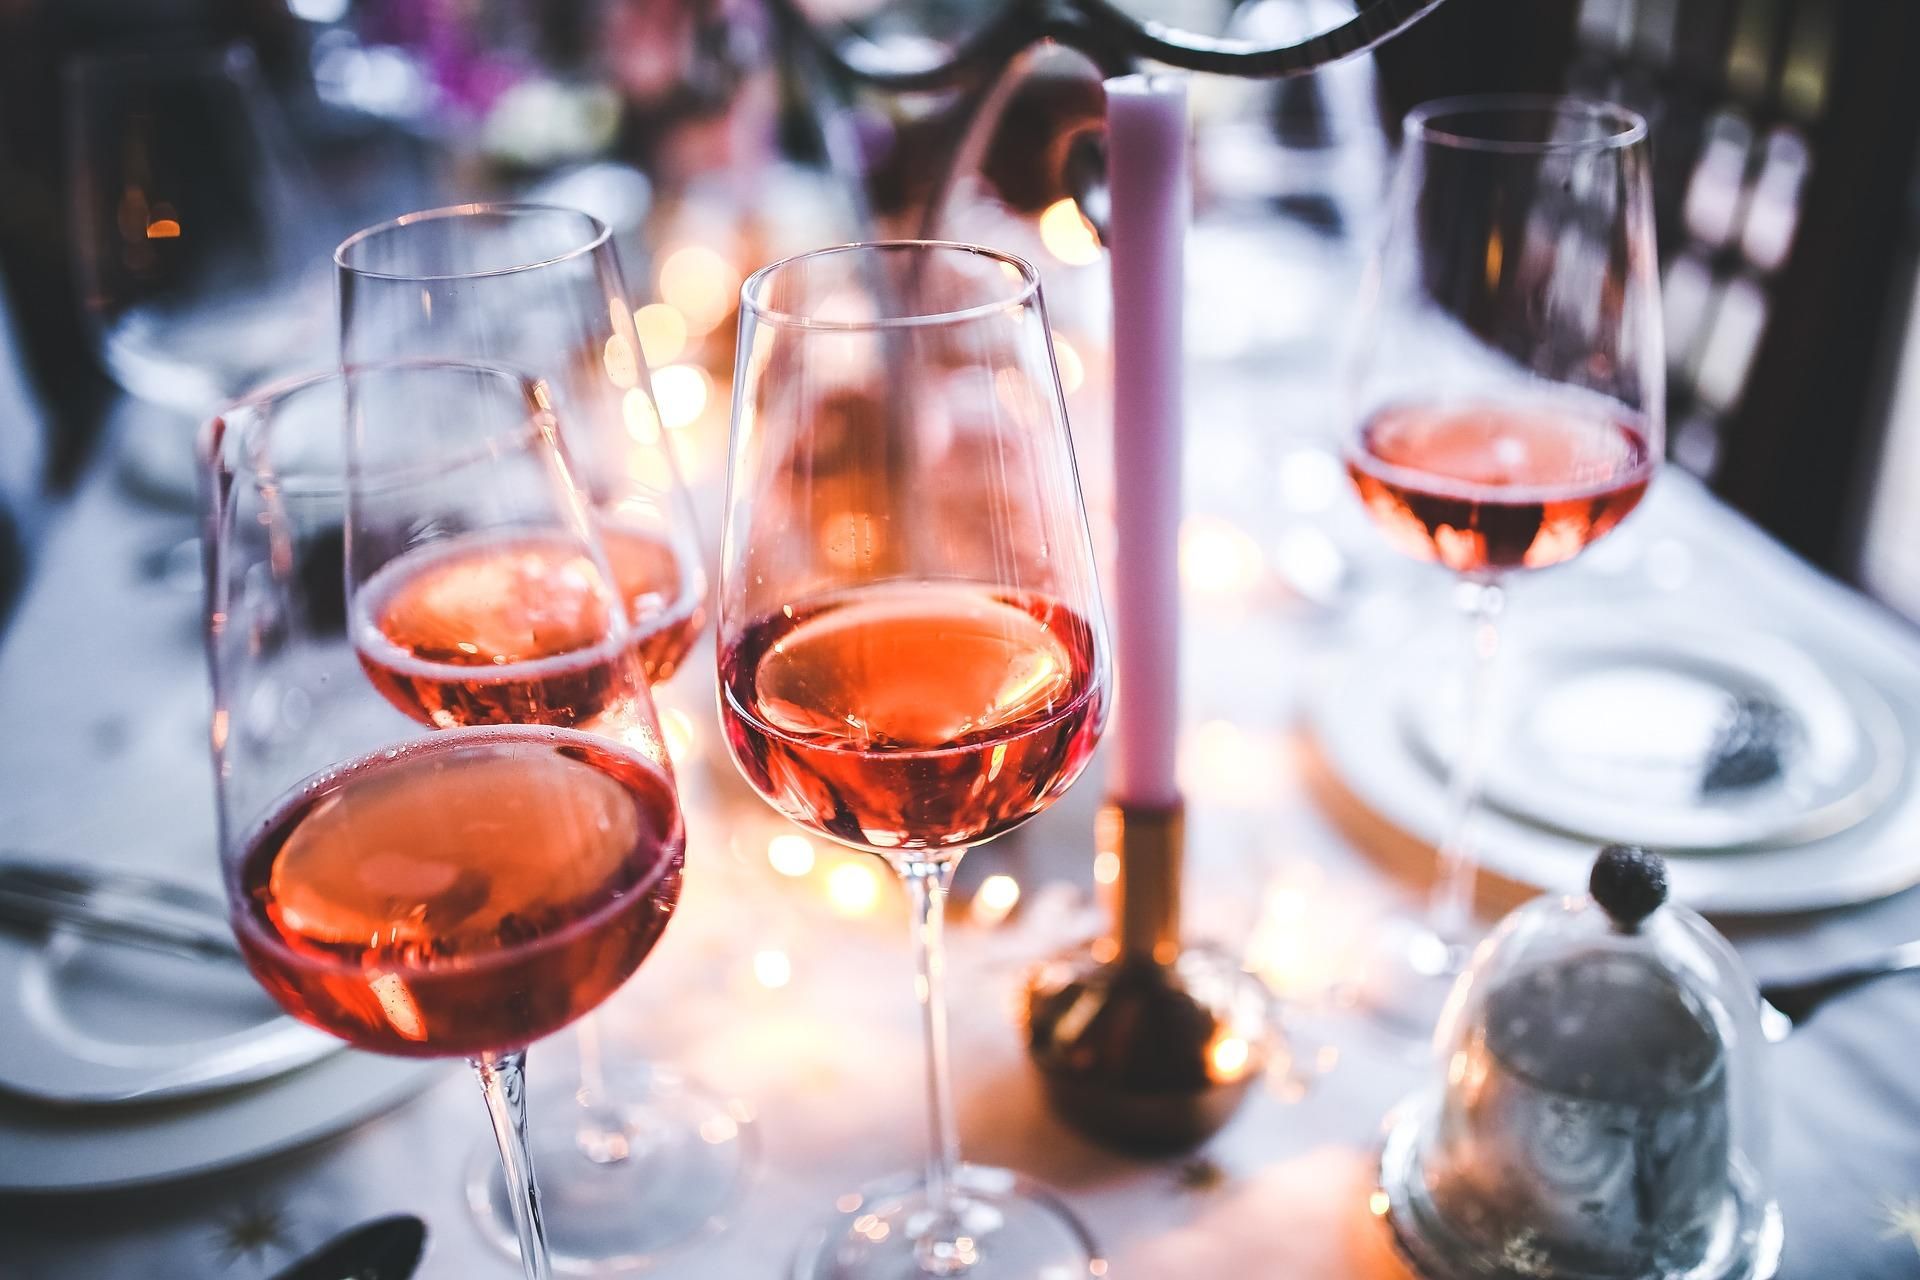 Суперрозе: найцікавіші факти про рожеве вино